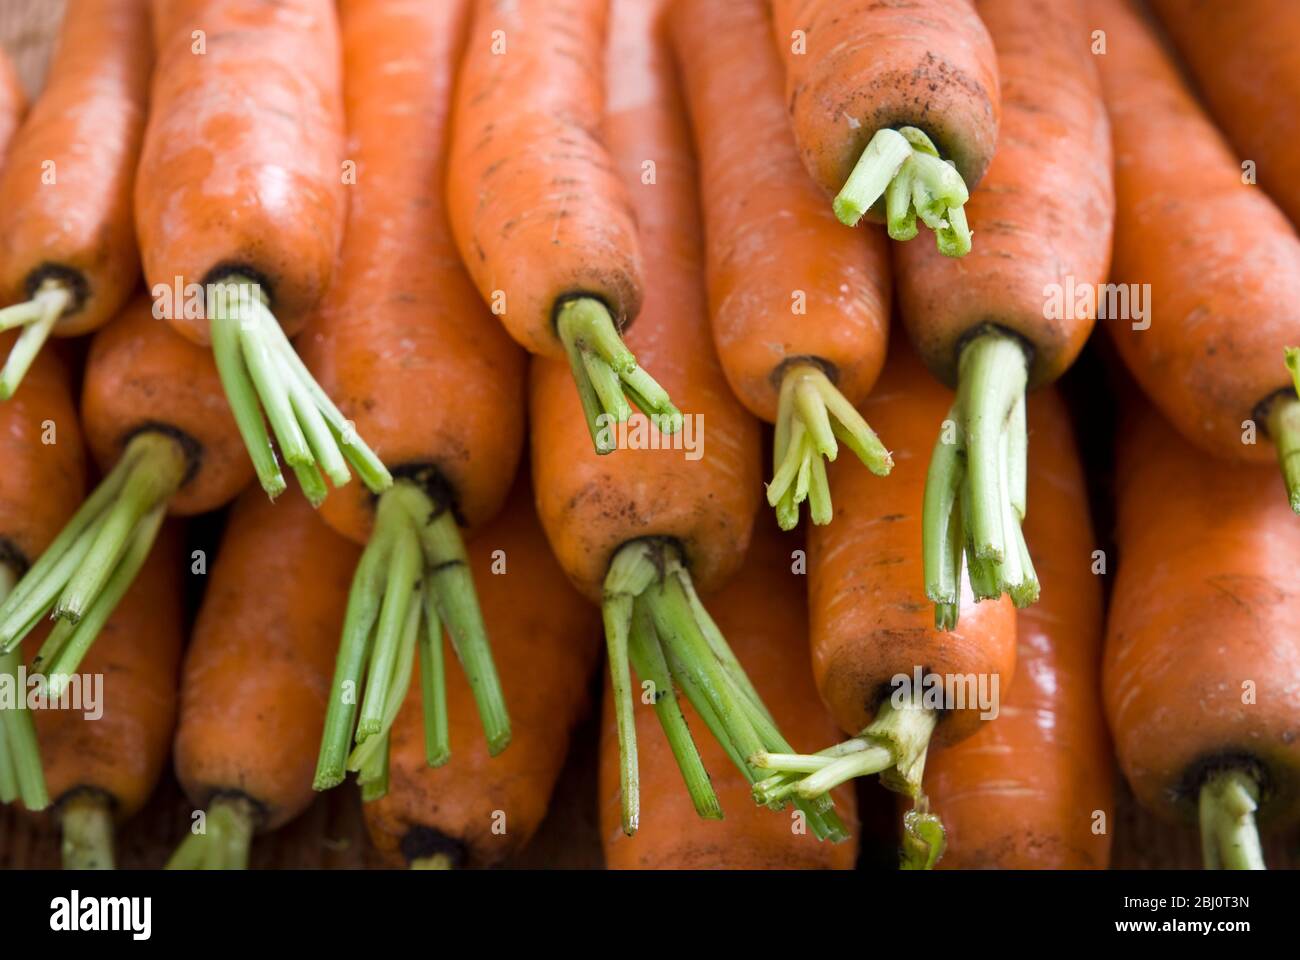 Stapel roher frischer Karotten mit grünen Spitzen - Stockfoto